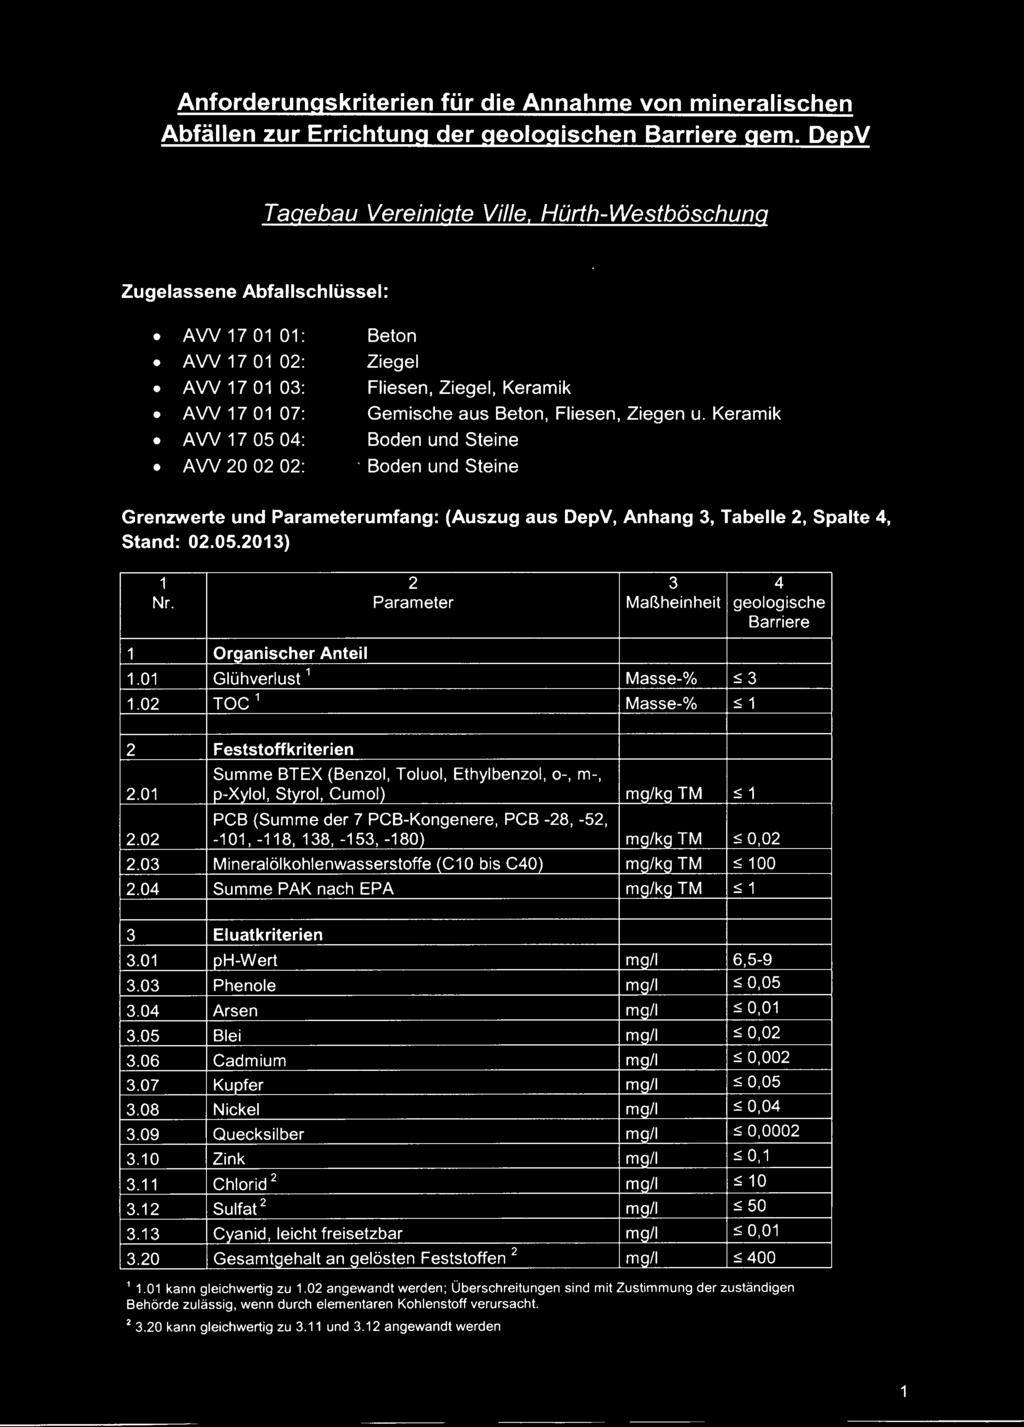 Keramik AW 7 05 04: Boden und Steine AW 20 02 02: Boden und Steine Grenzwerte und Parameterumfang: (Auszug aus DepV,Anhang 3, Tabelle 2, Spalte 4, Stand: 02.05.203) 2 3 4 Nr.